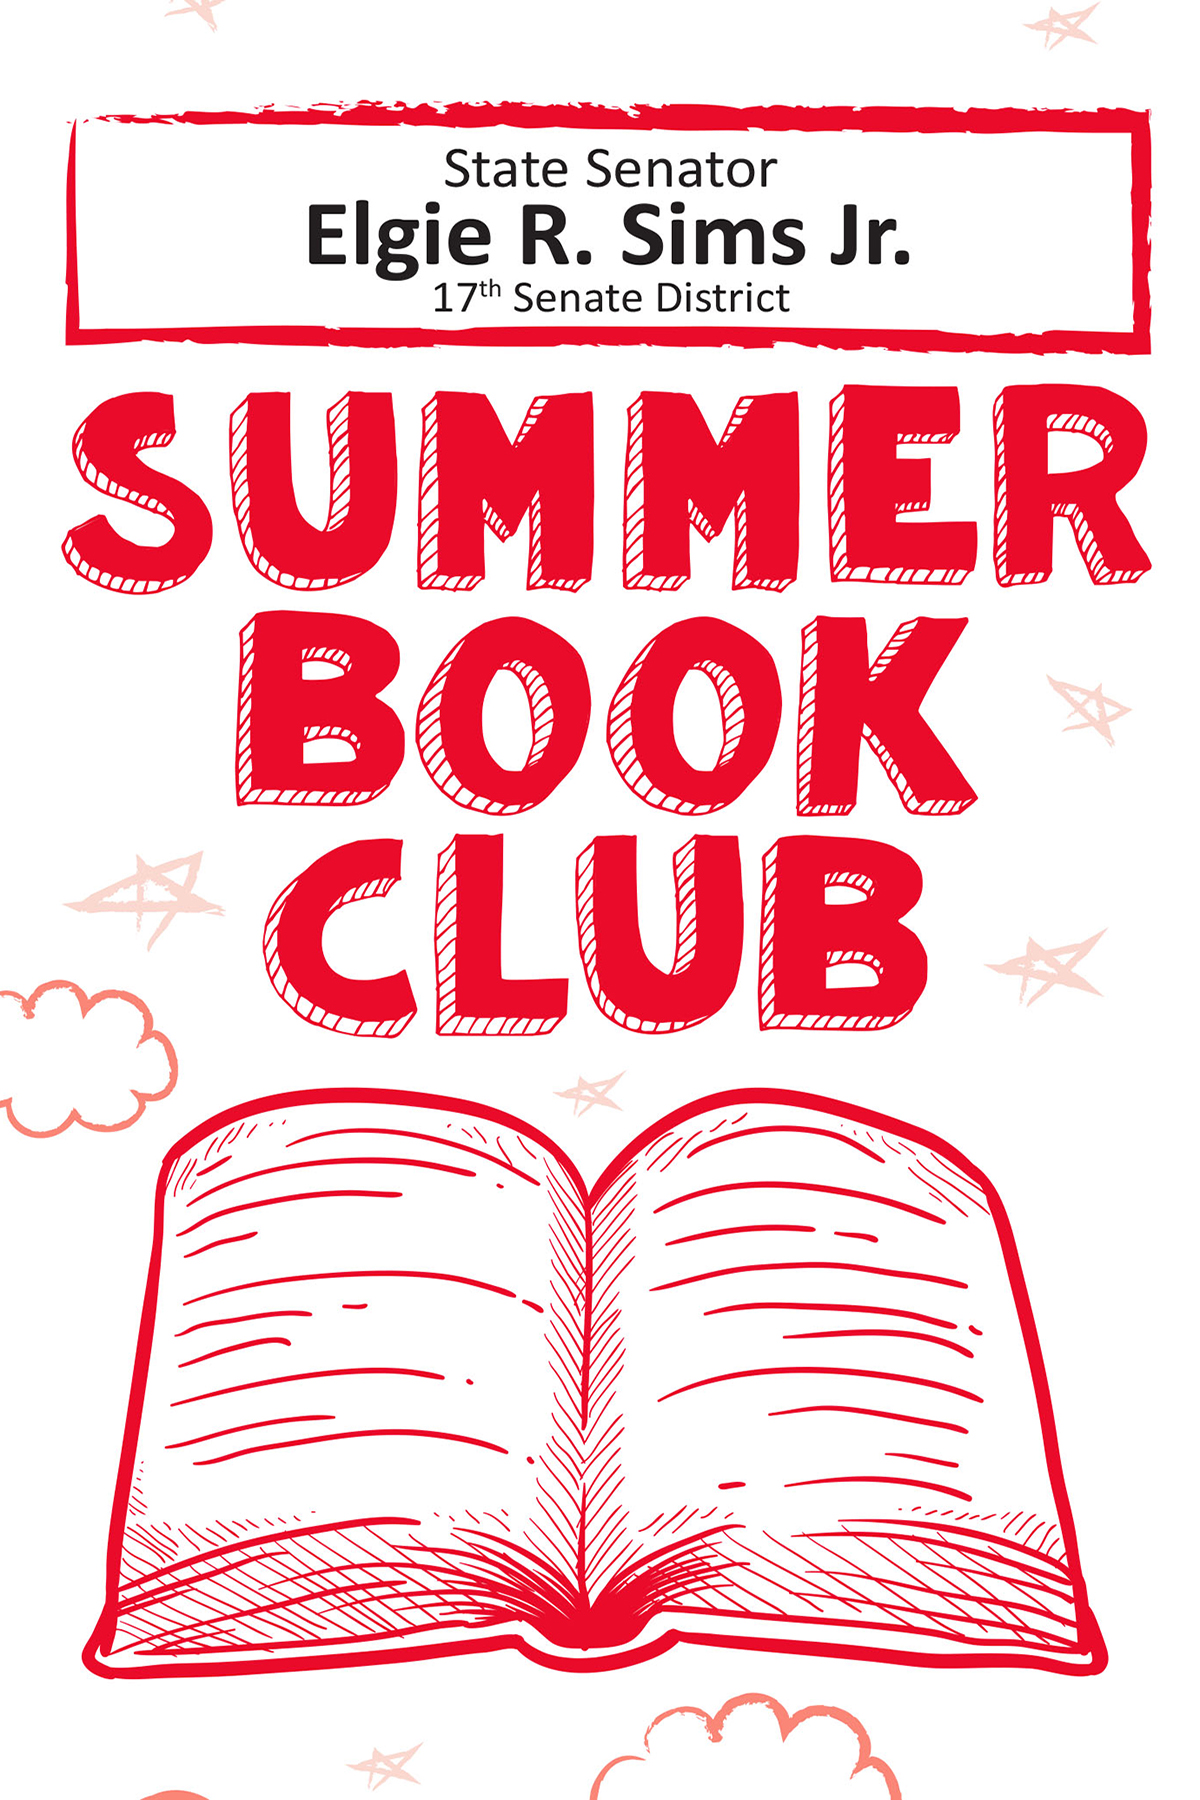 Book Club Sims 1